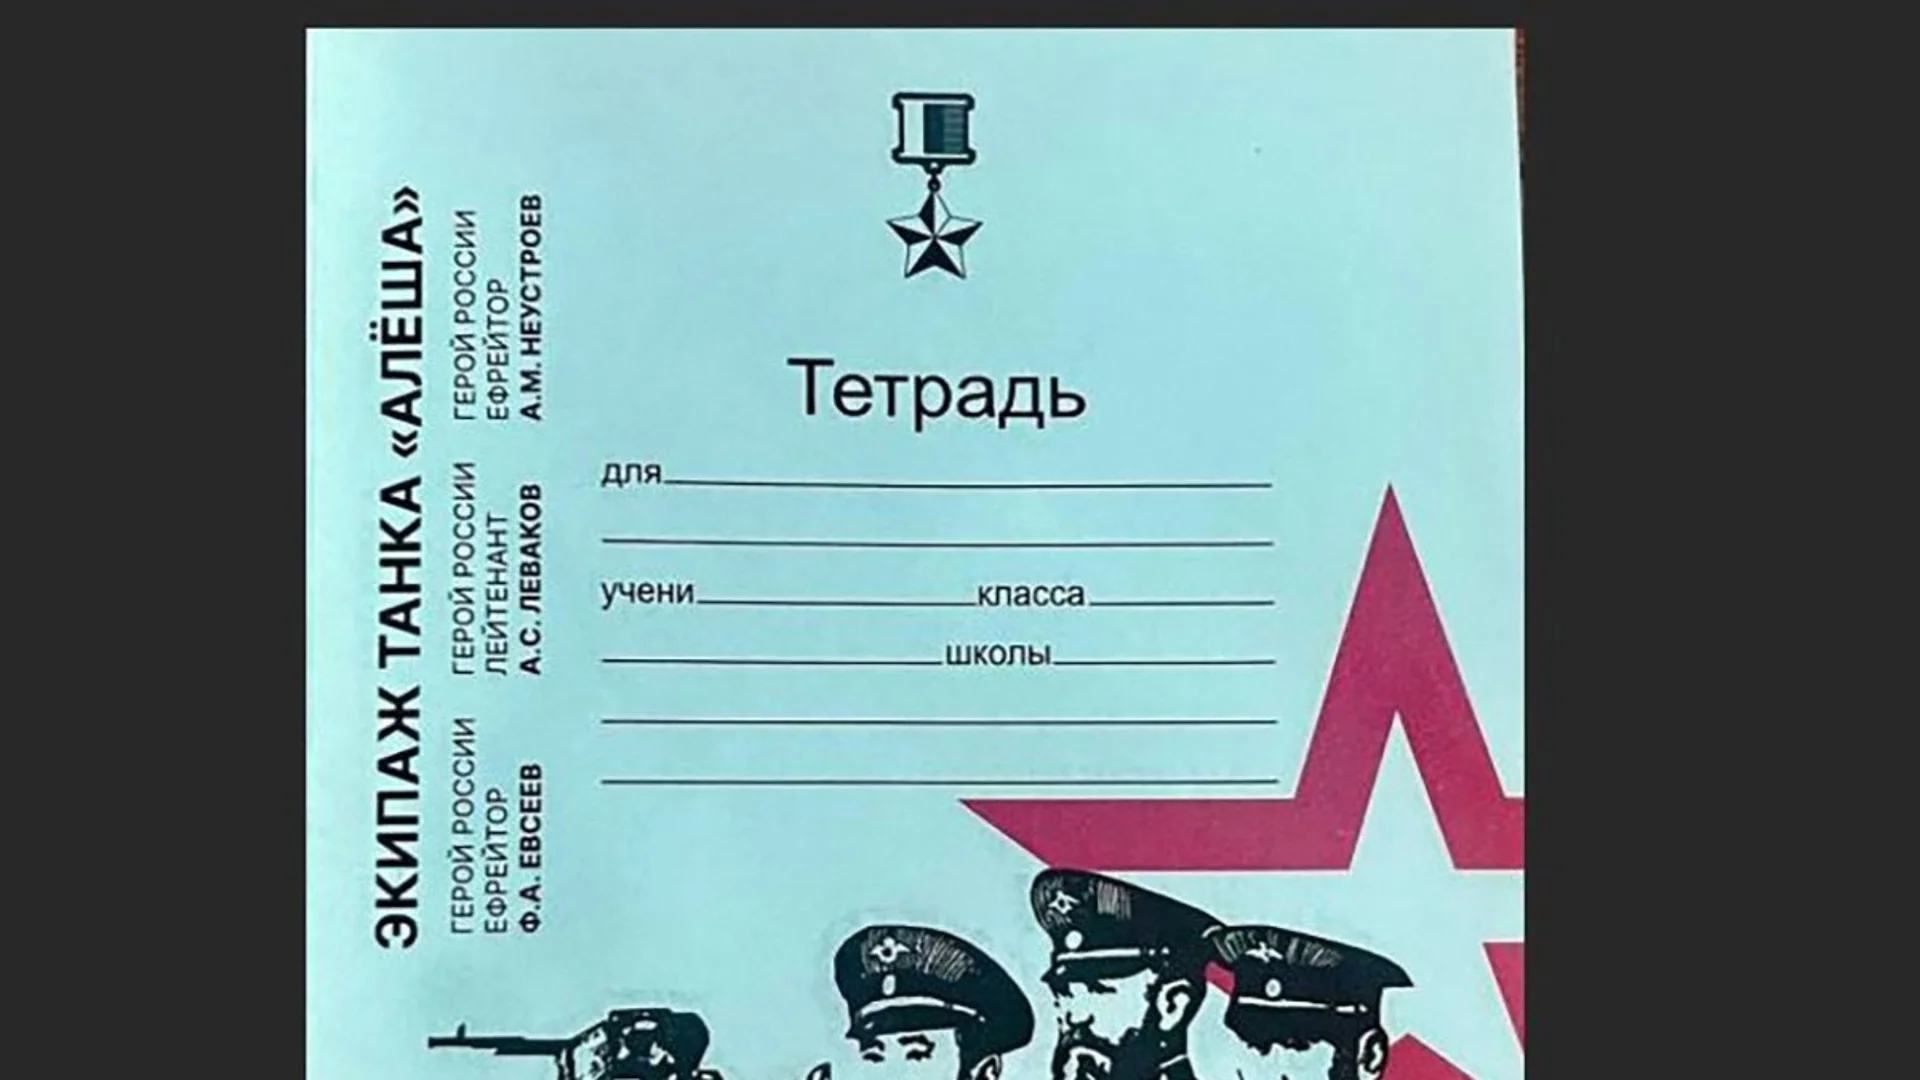 Промиване на мозъци: В руски училища въвеждат тетрадки с образа на "героите от спецоперацията"